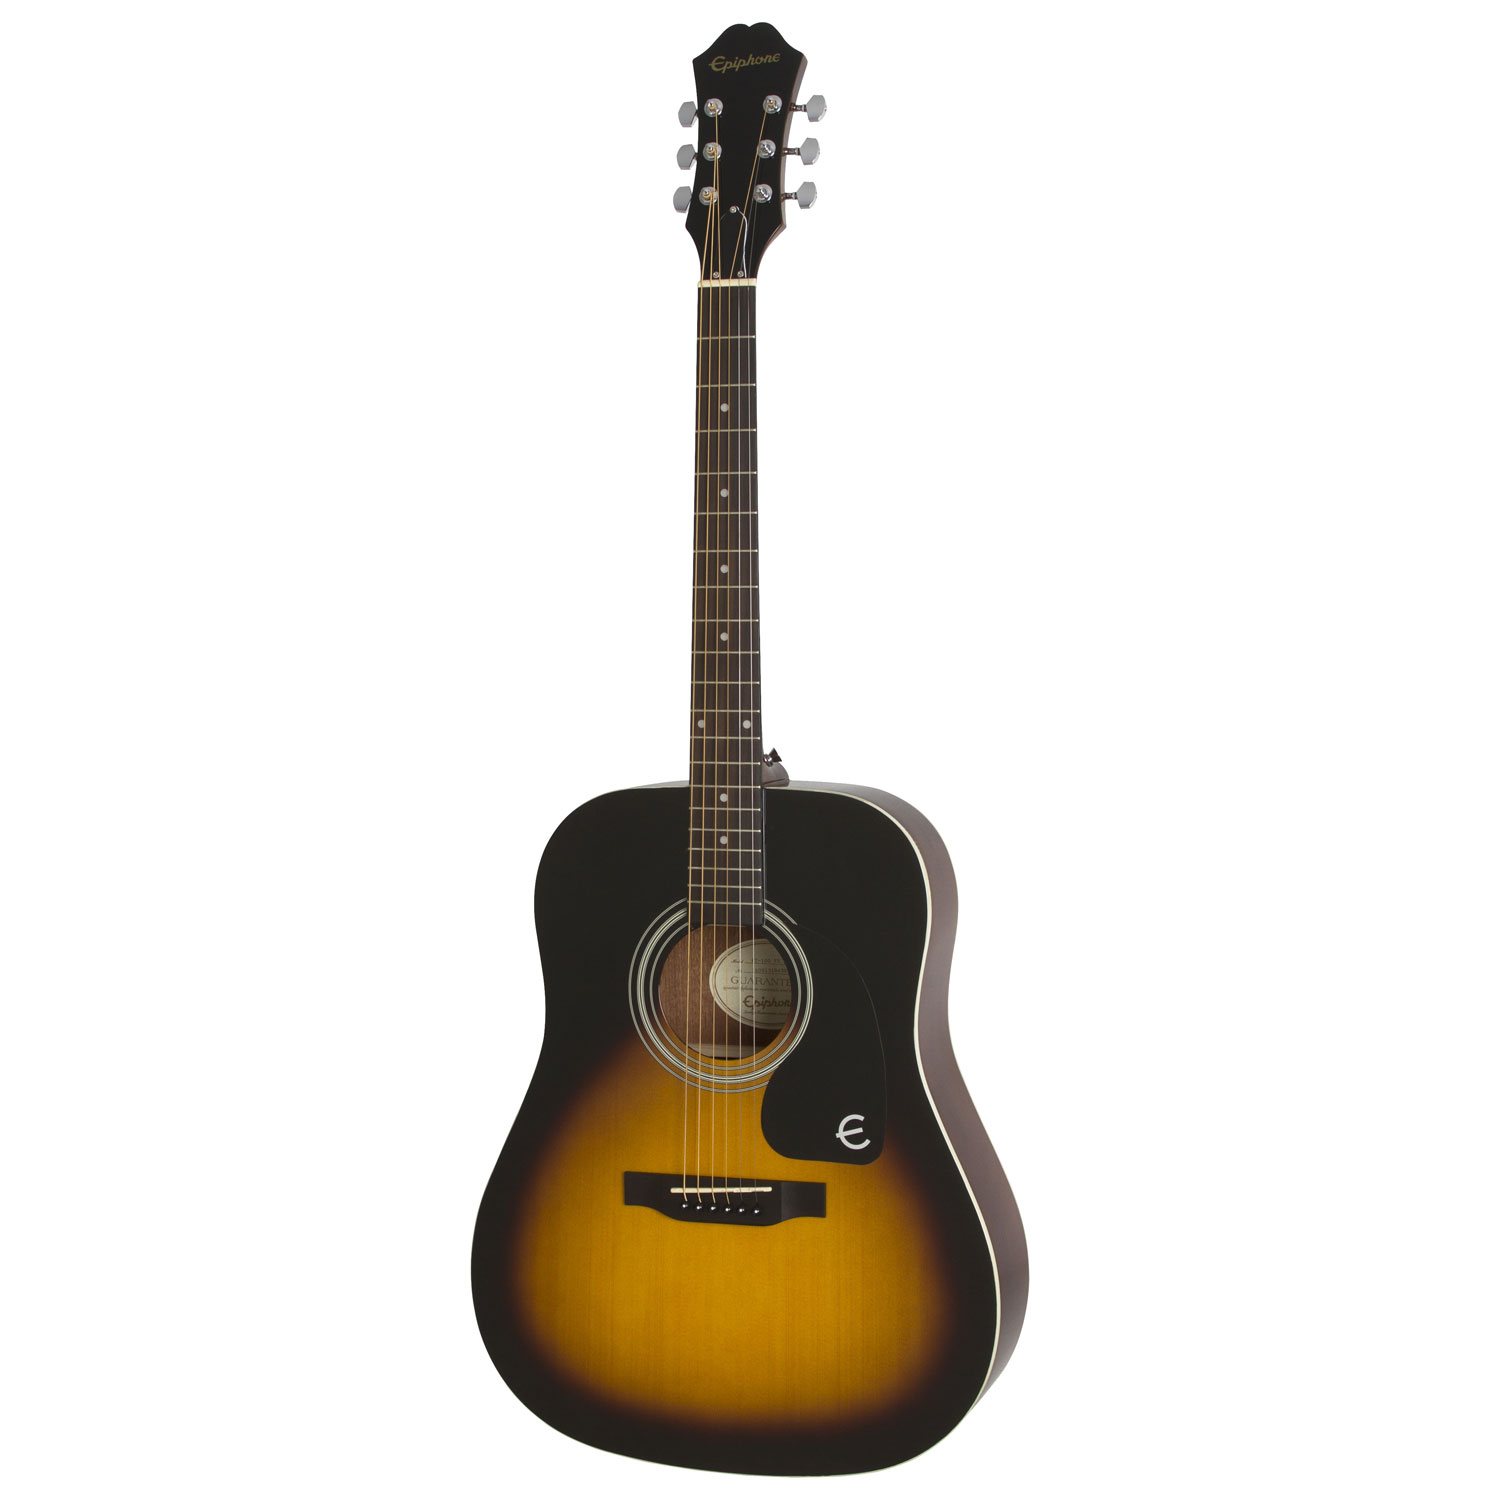 Epiphone FT-100 Acoustic Guitar (EAFTVSCH3) - Vintage Sunburst - Only at Best Buy